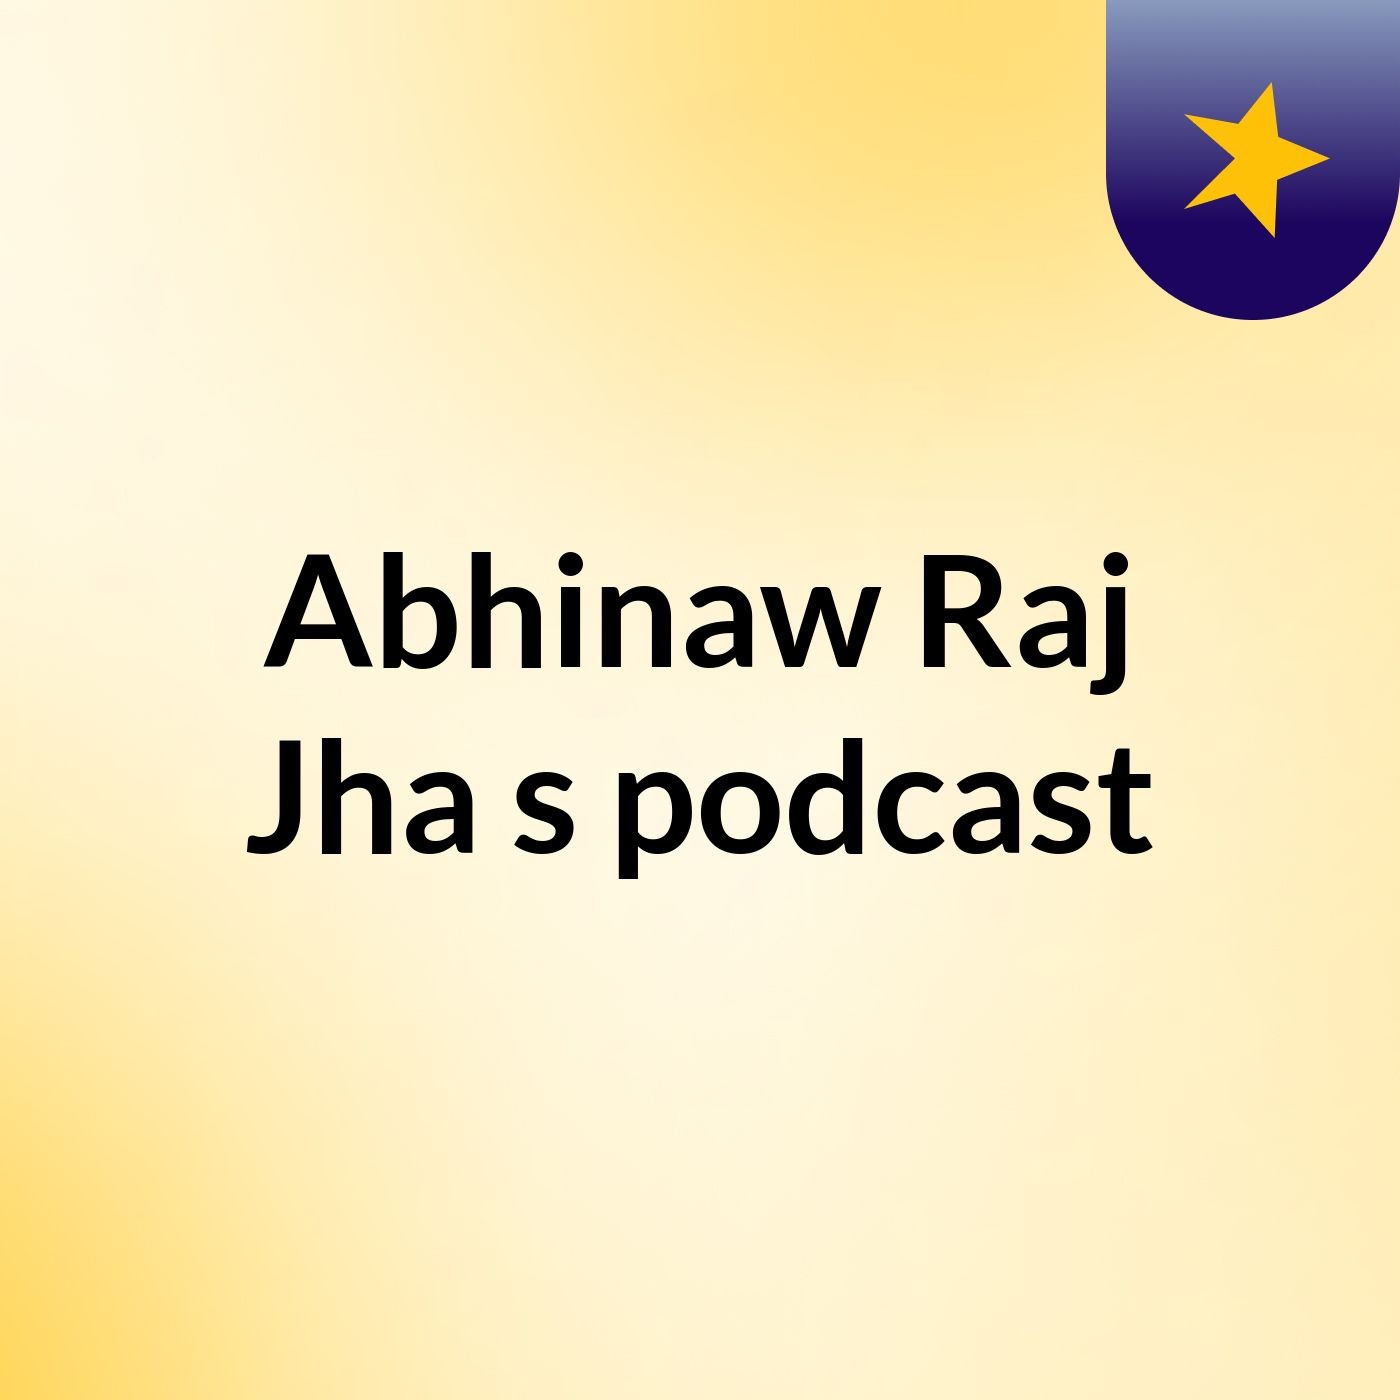 Abhinaw Raj Jha's podcast